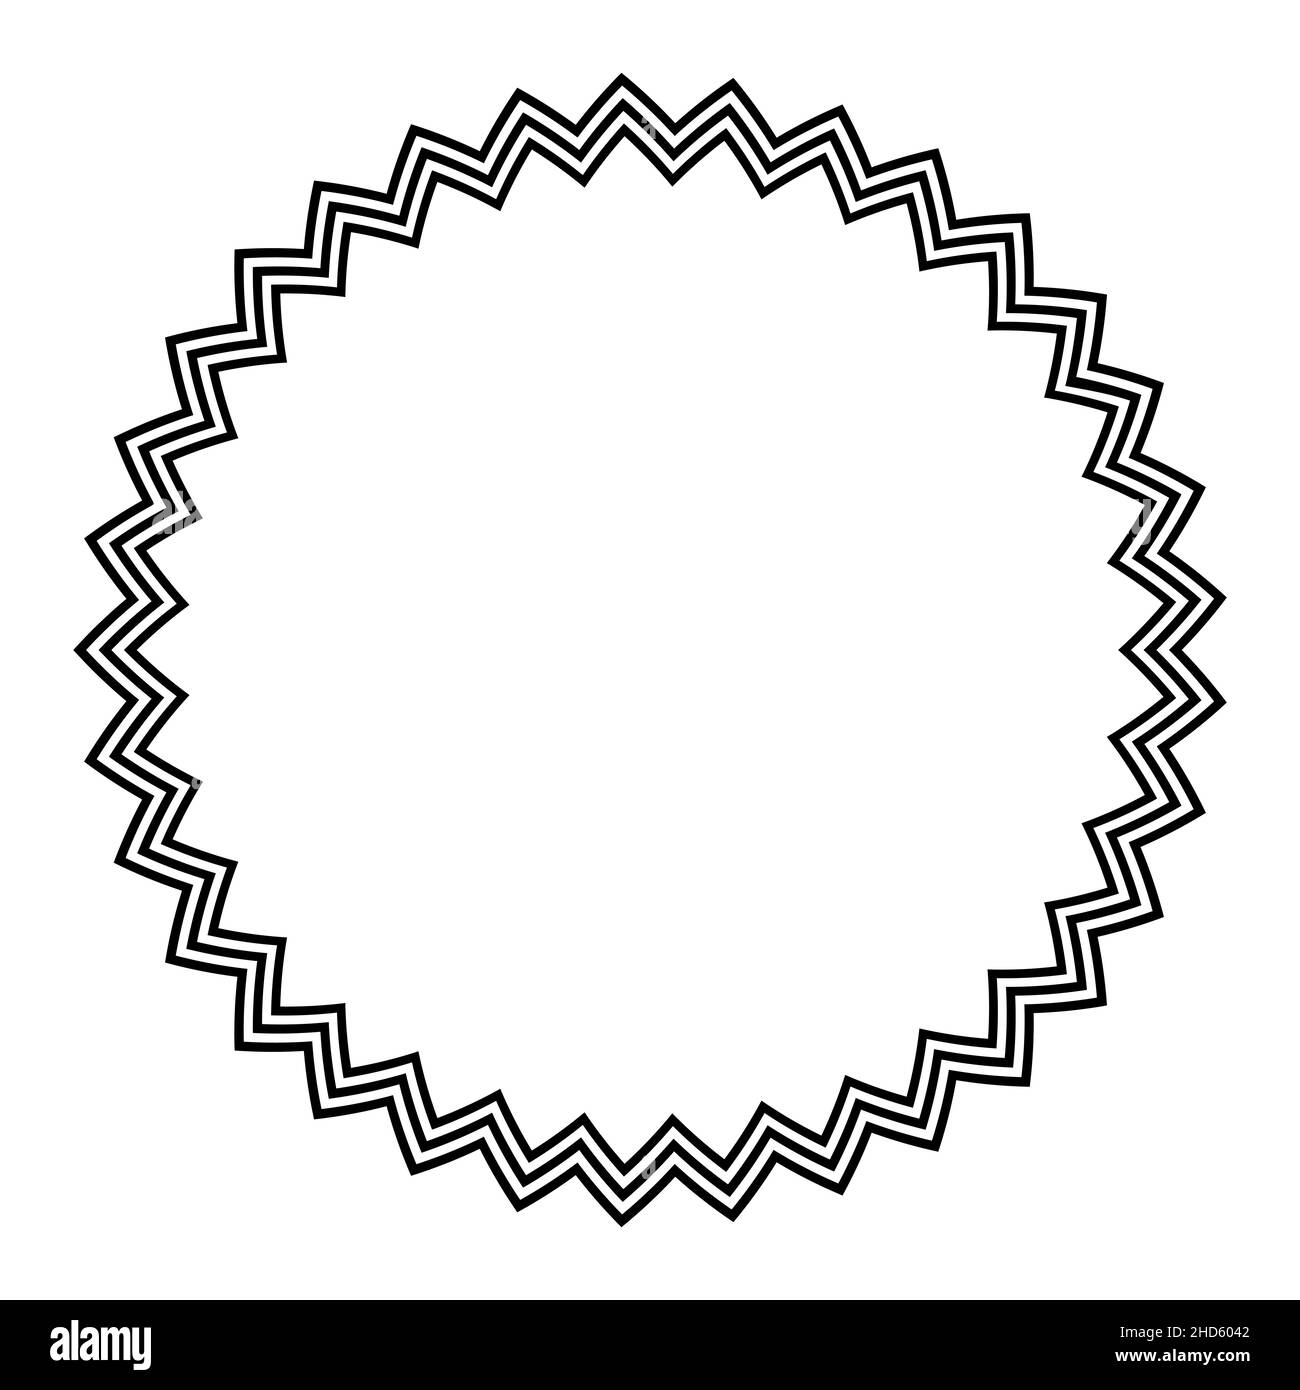 Kreisrahmen mit horizontalen Zickzacklinien. Drei markante gezackte Linien bilden eine mehrfache Sternfigur und einen dekorativen Rand. Stockfoto